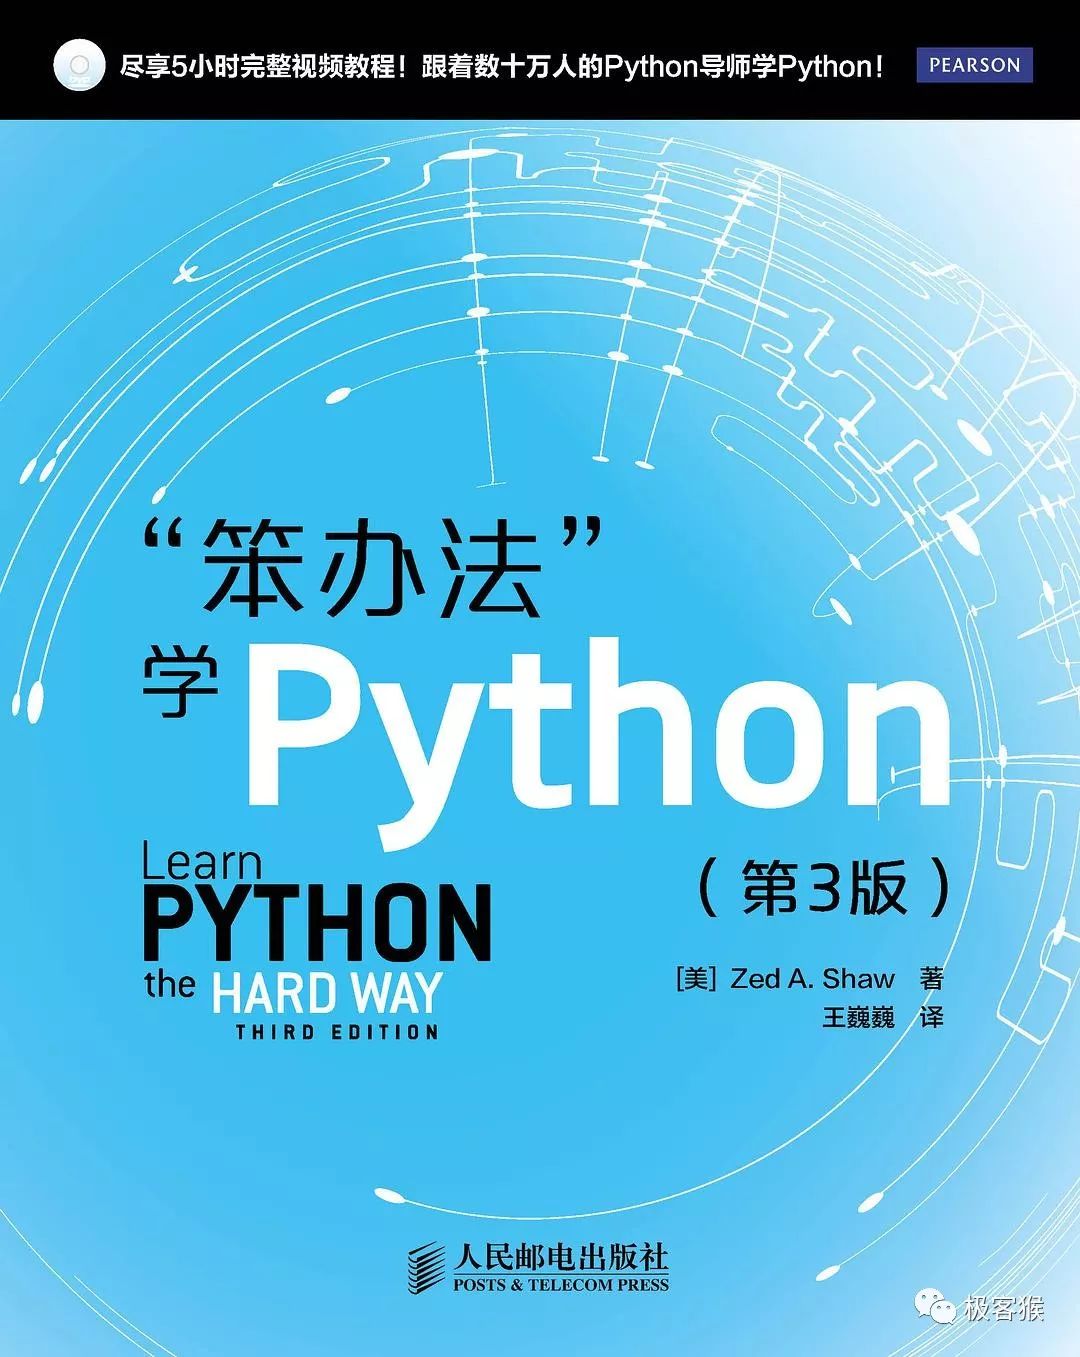 《笨办法学 Python》